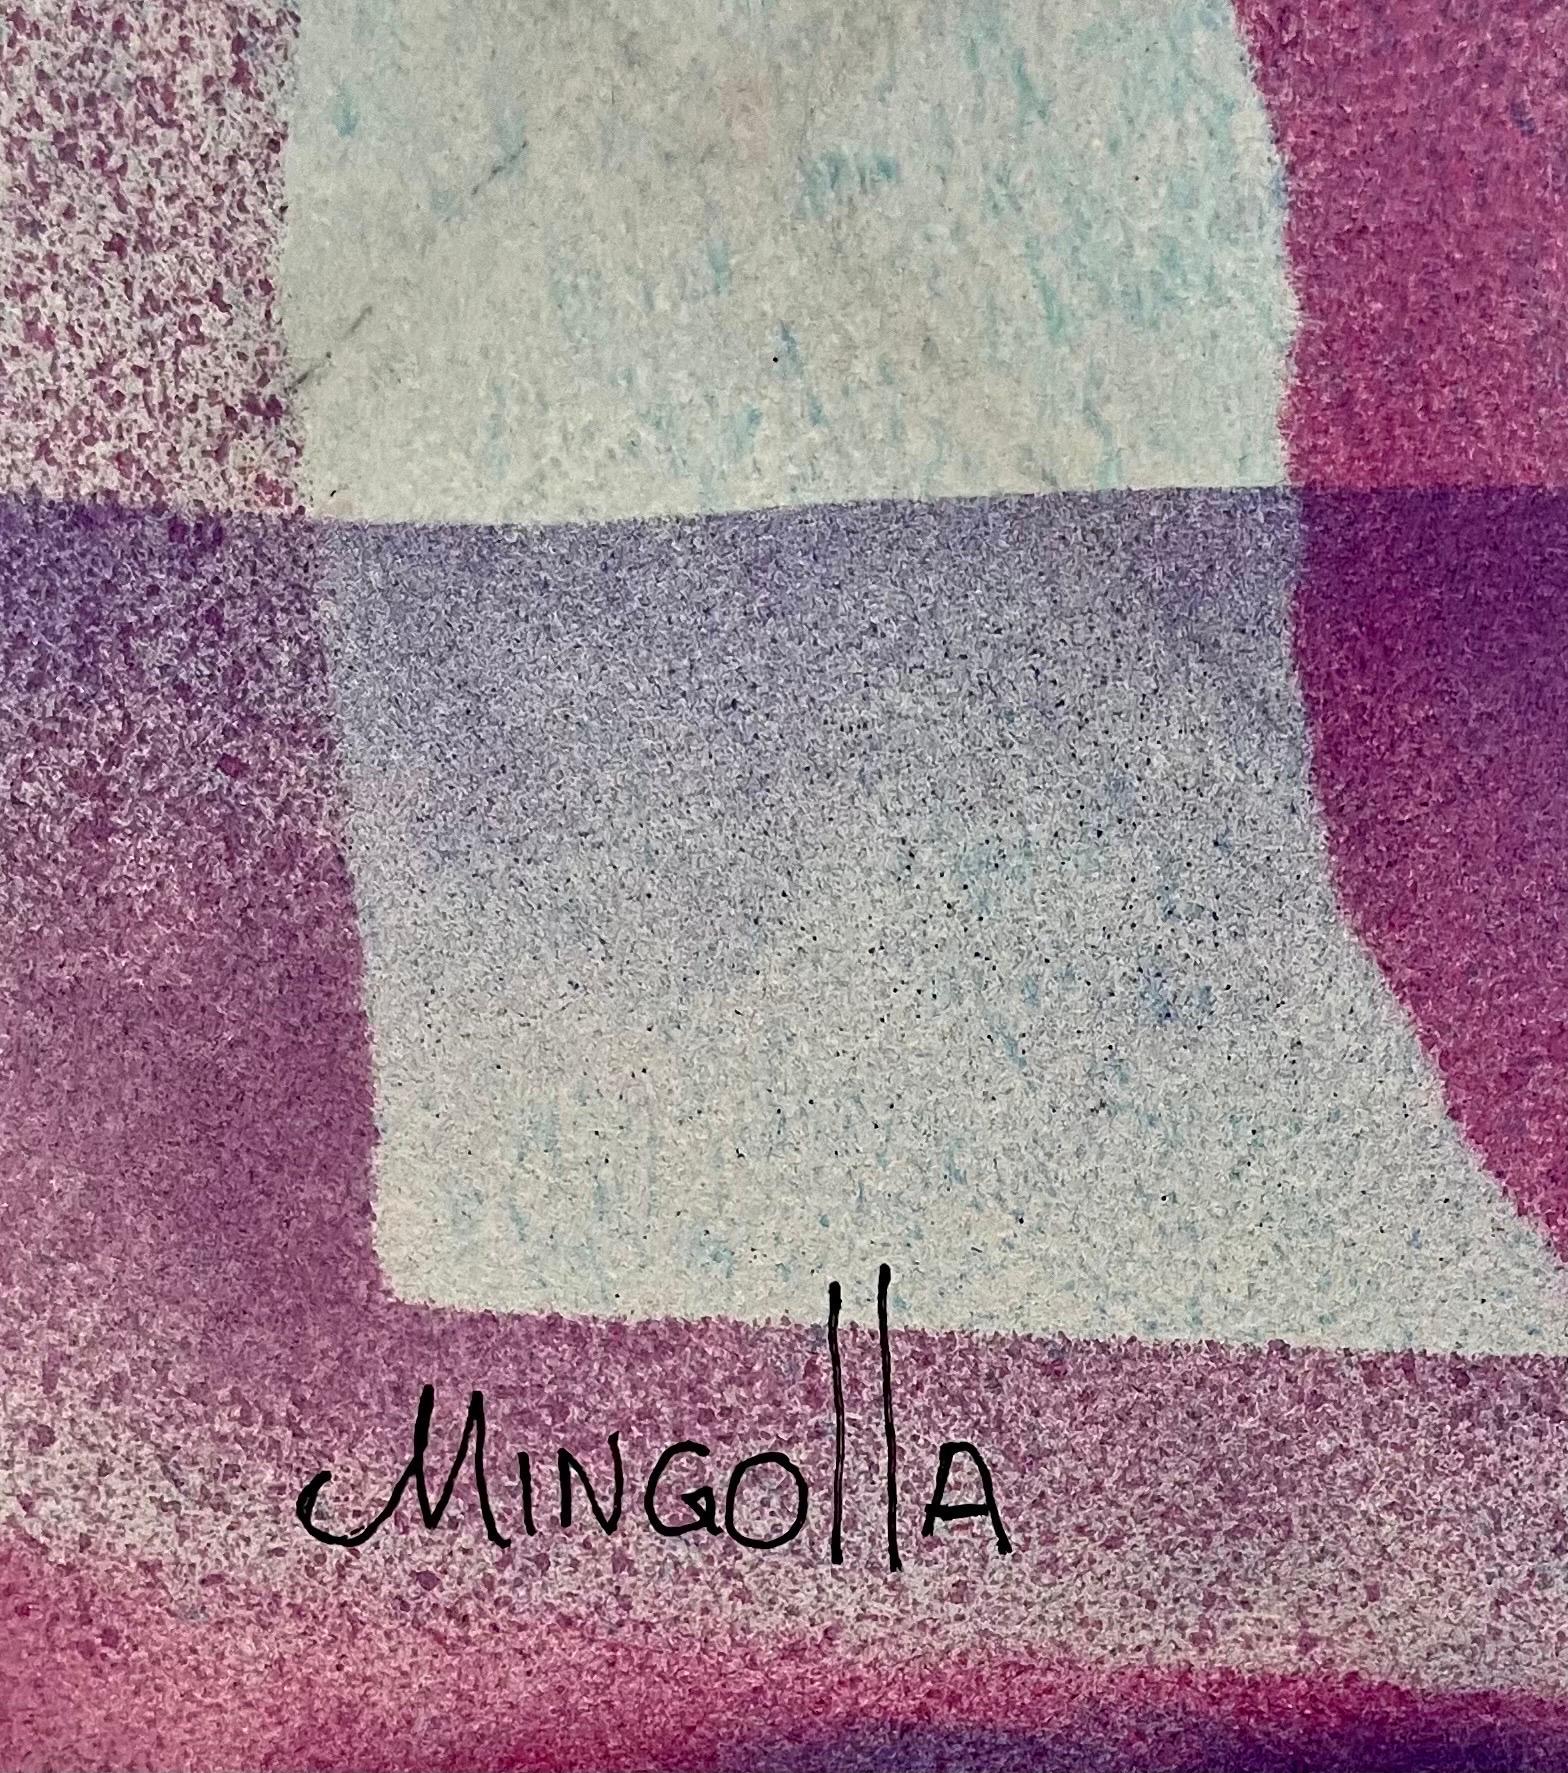 Großes abstrakt-expressionistisches Aquarell-Farbfeldgemälde im Stil von Paul Jenkins – Painting von Dom Mingolla